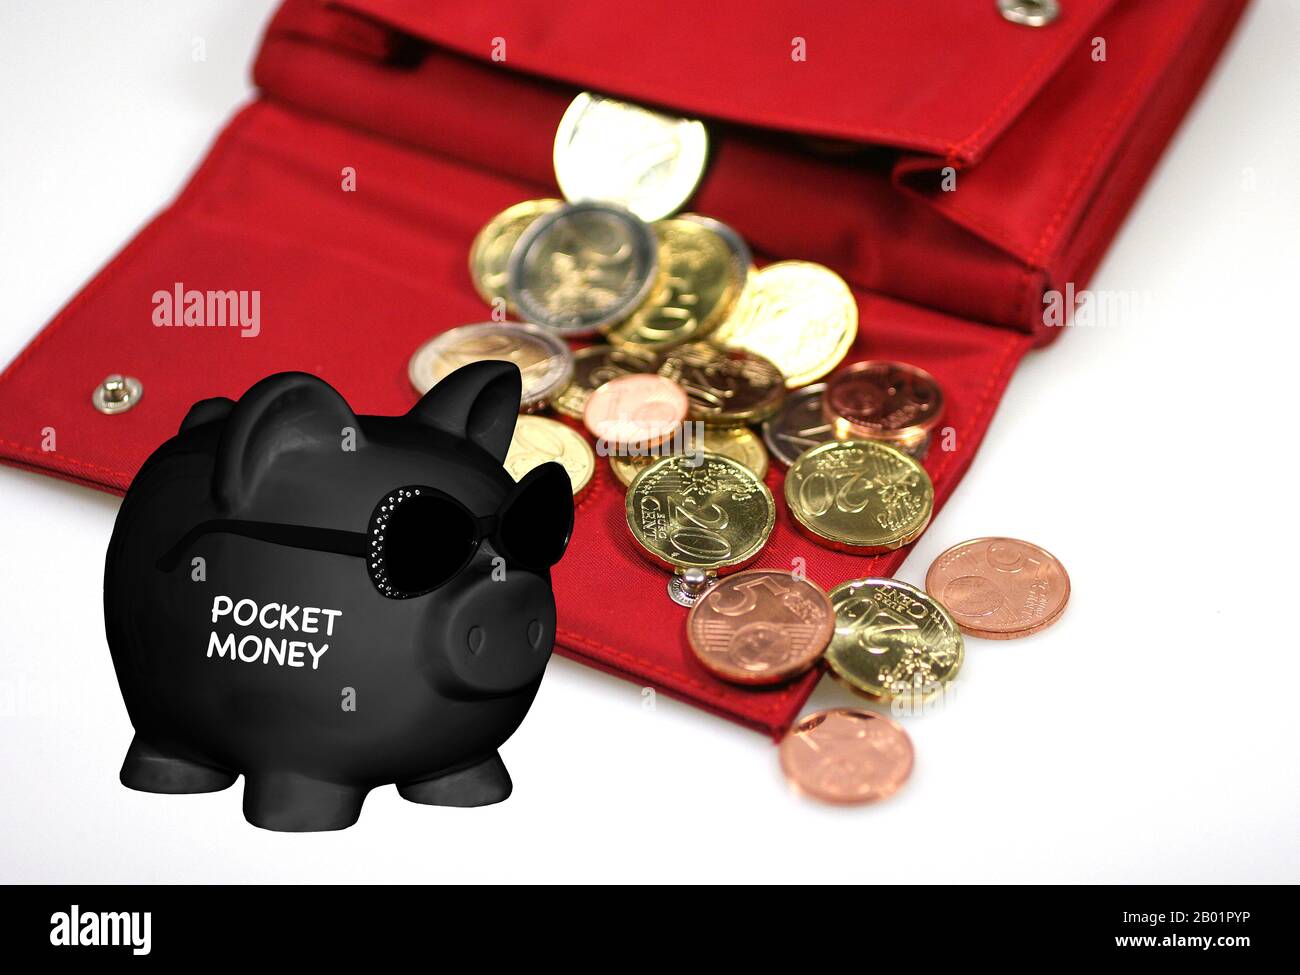 Negro Piggy banco con gafas de sol y letras Poket Money, cartera con efectivo en el fondo, composición Foto de stock